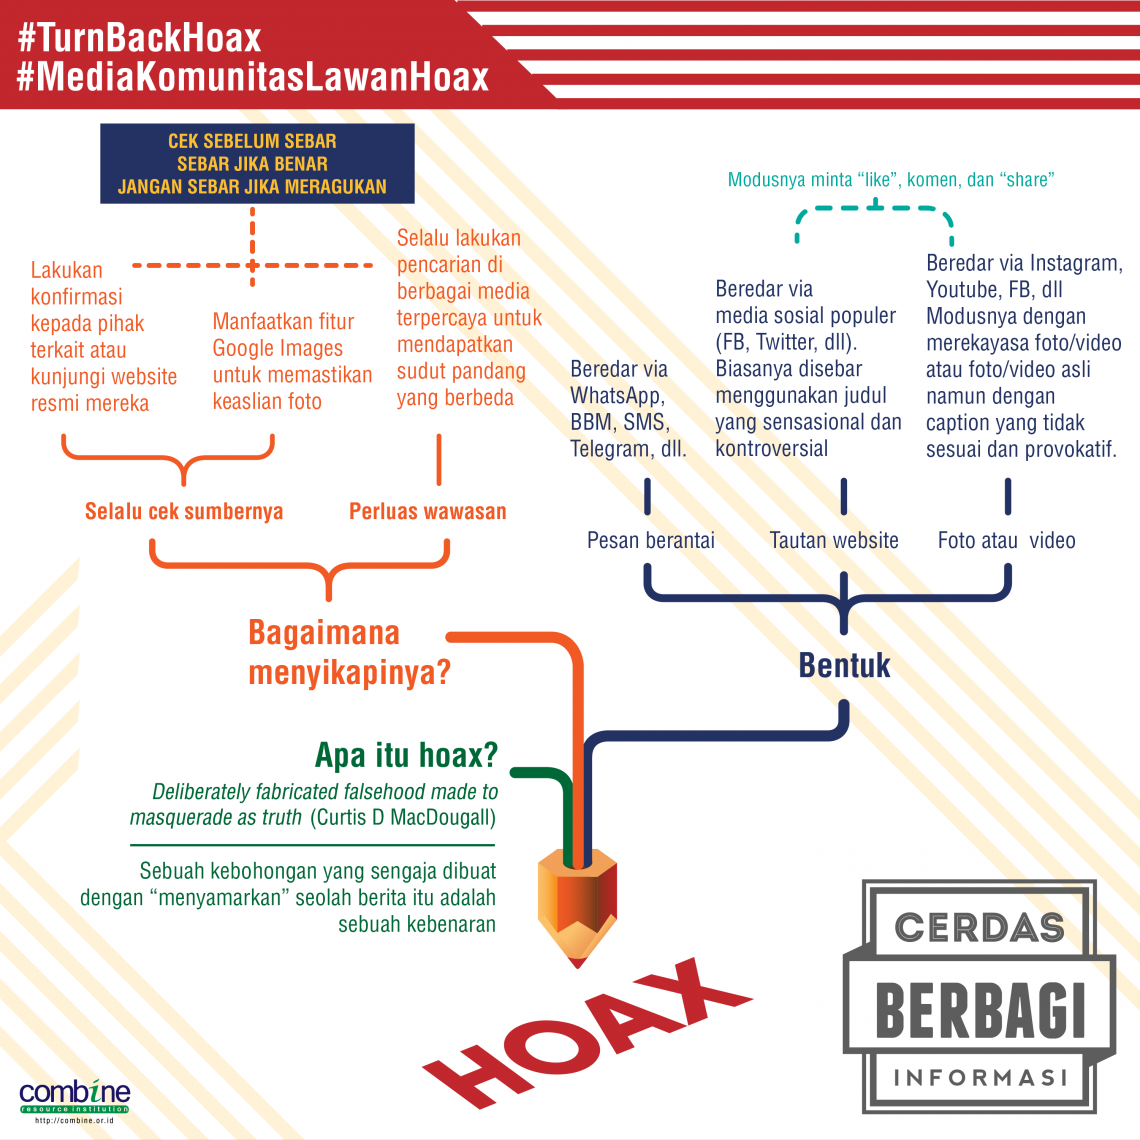 Infografis tentang hoaks